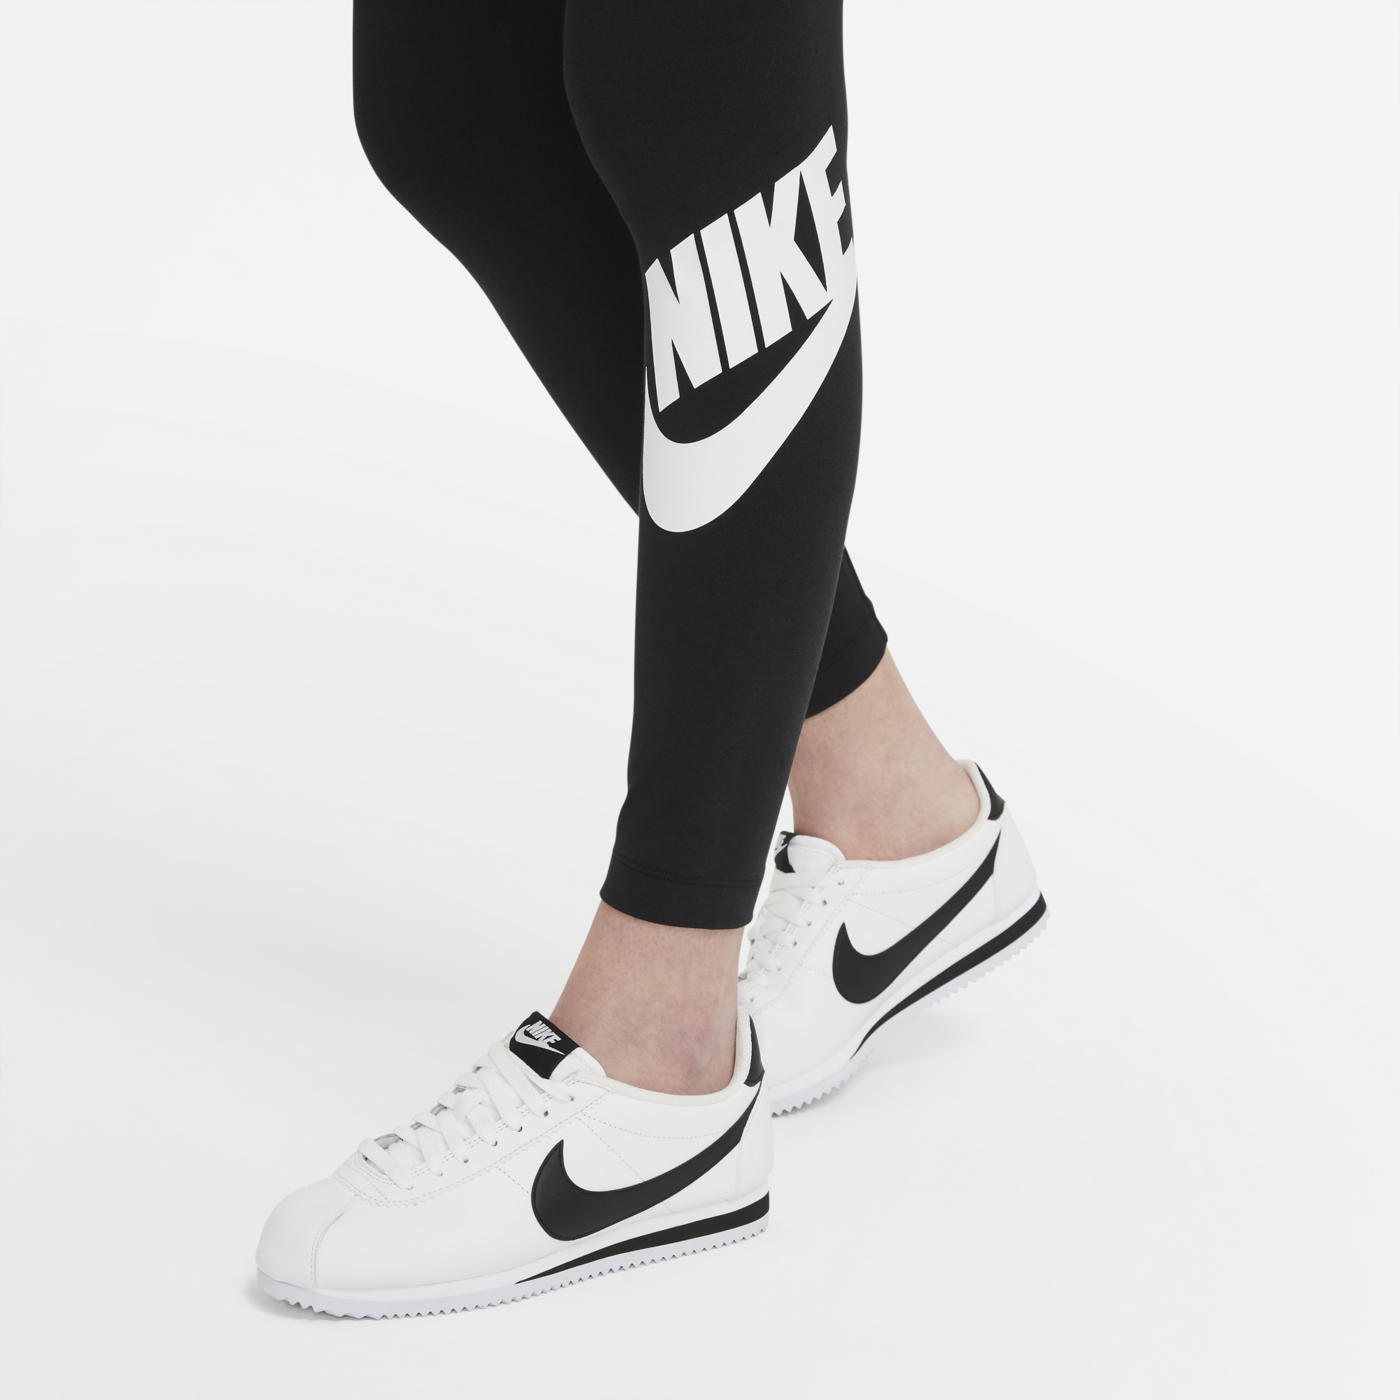 Nike Women Leggings Black CZ8528-010 - Sam Tabak